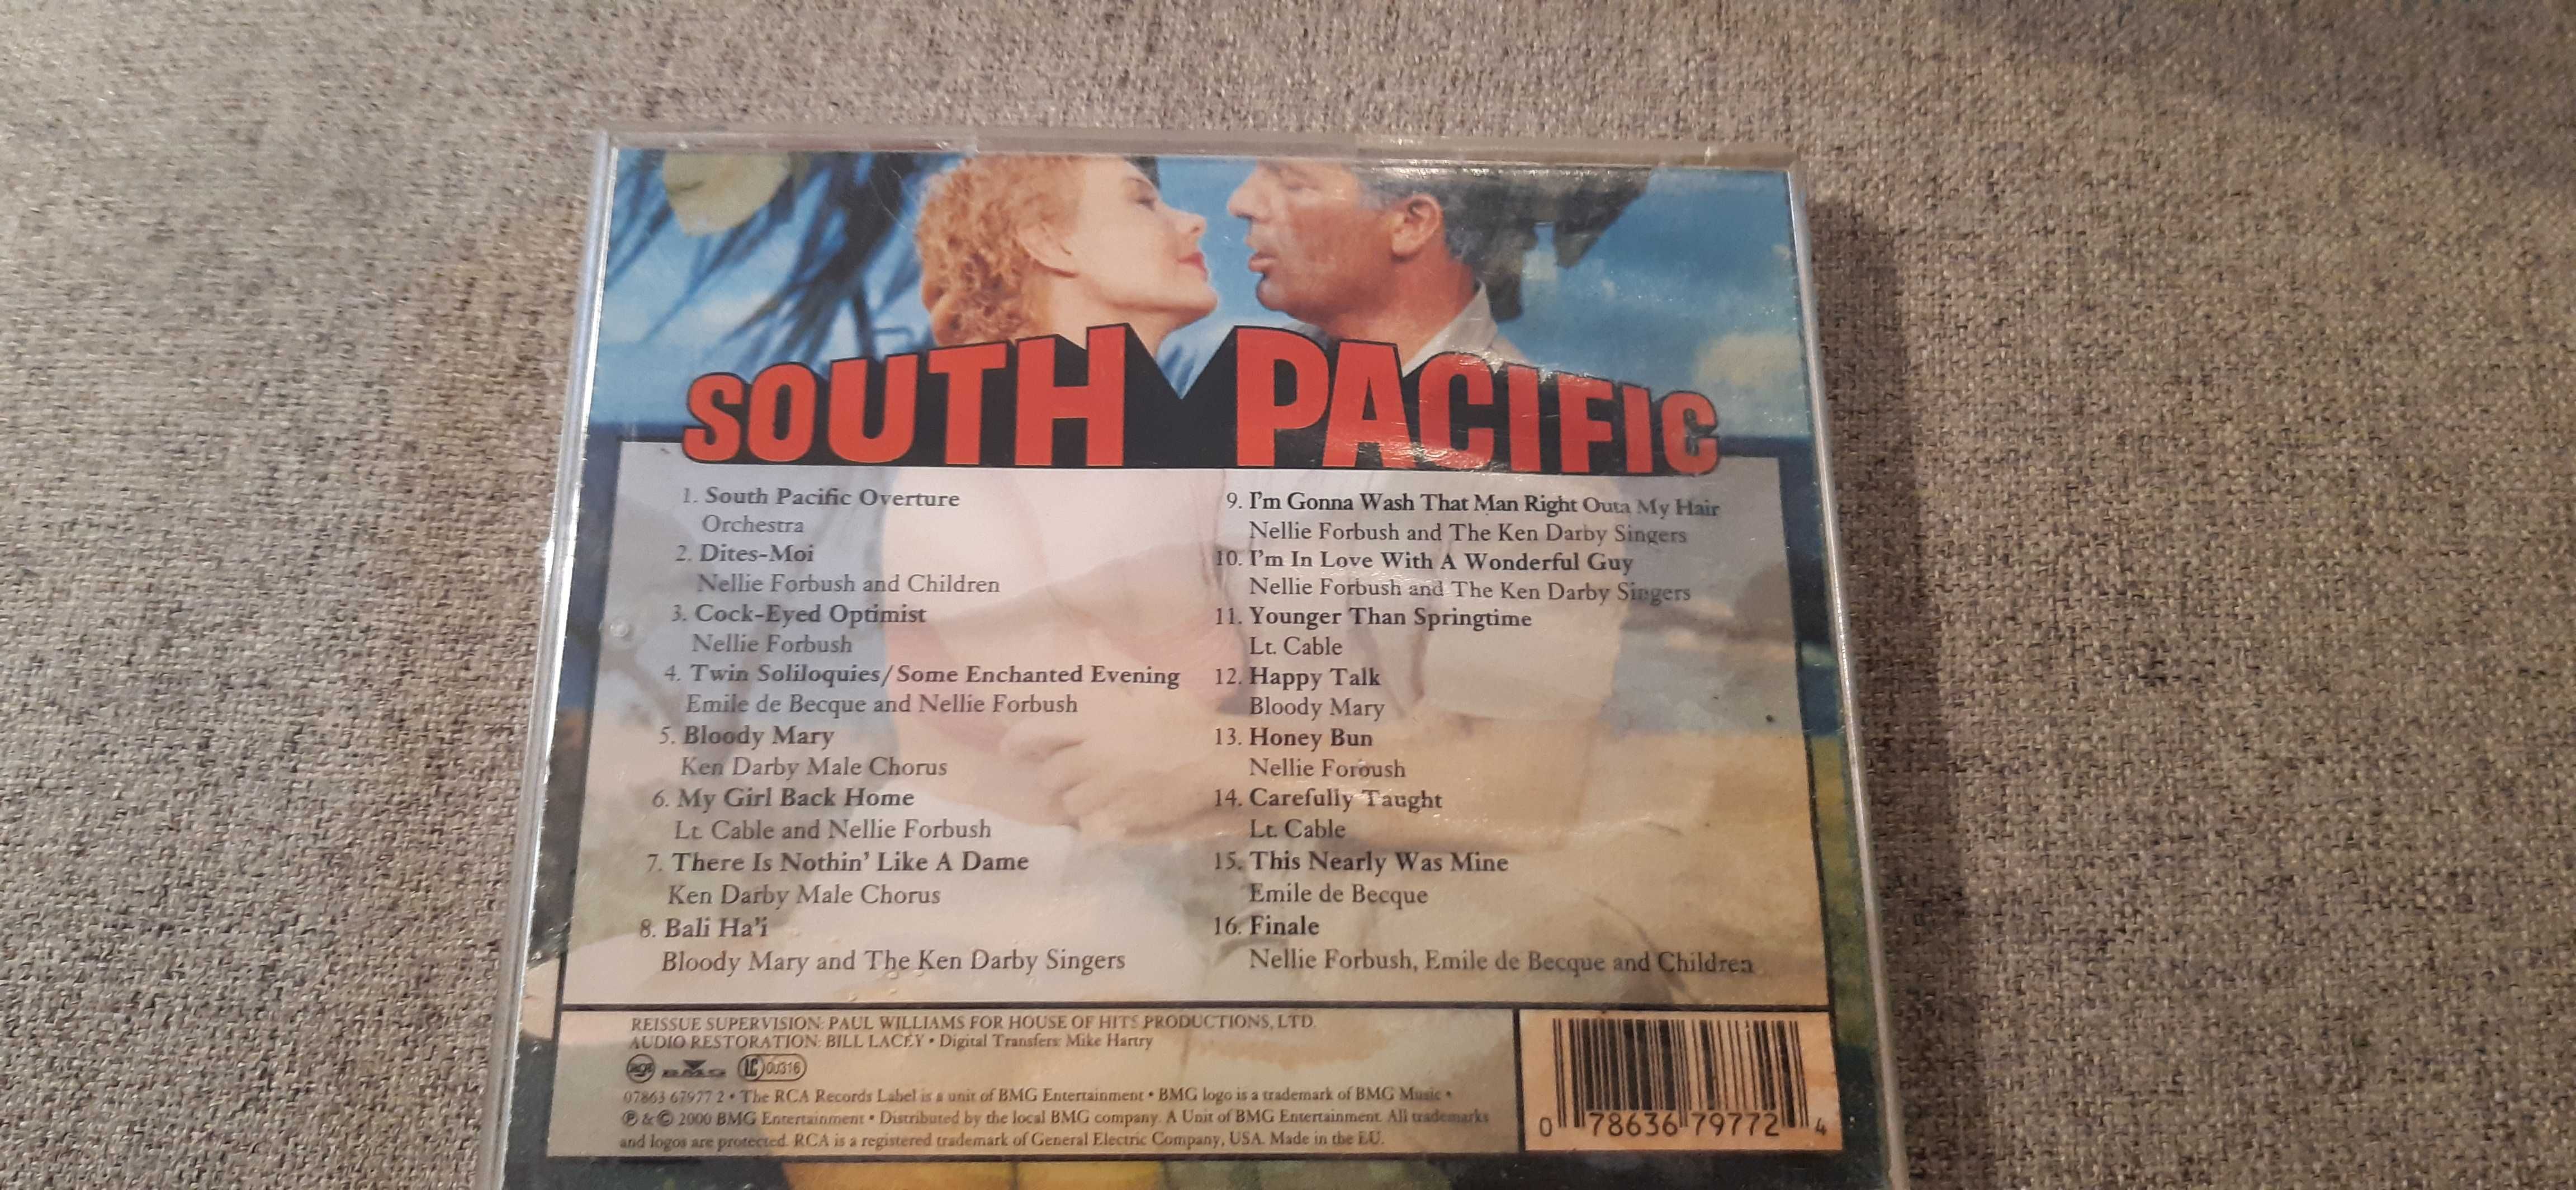 muzyka soundtrack z musikalu south pacyfic, rzadkie wydanie,